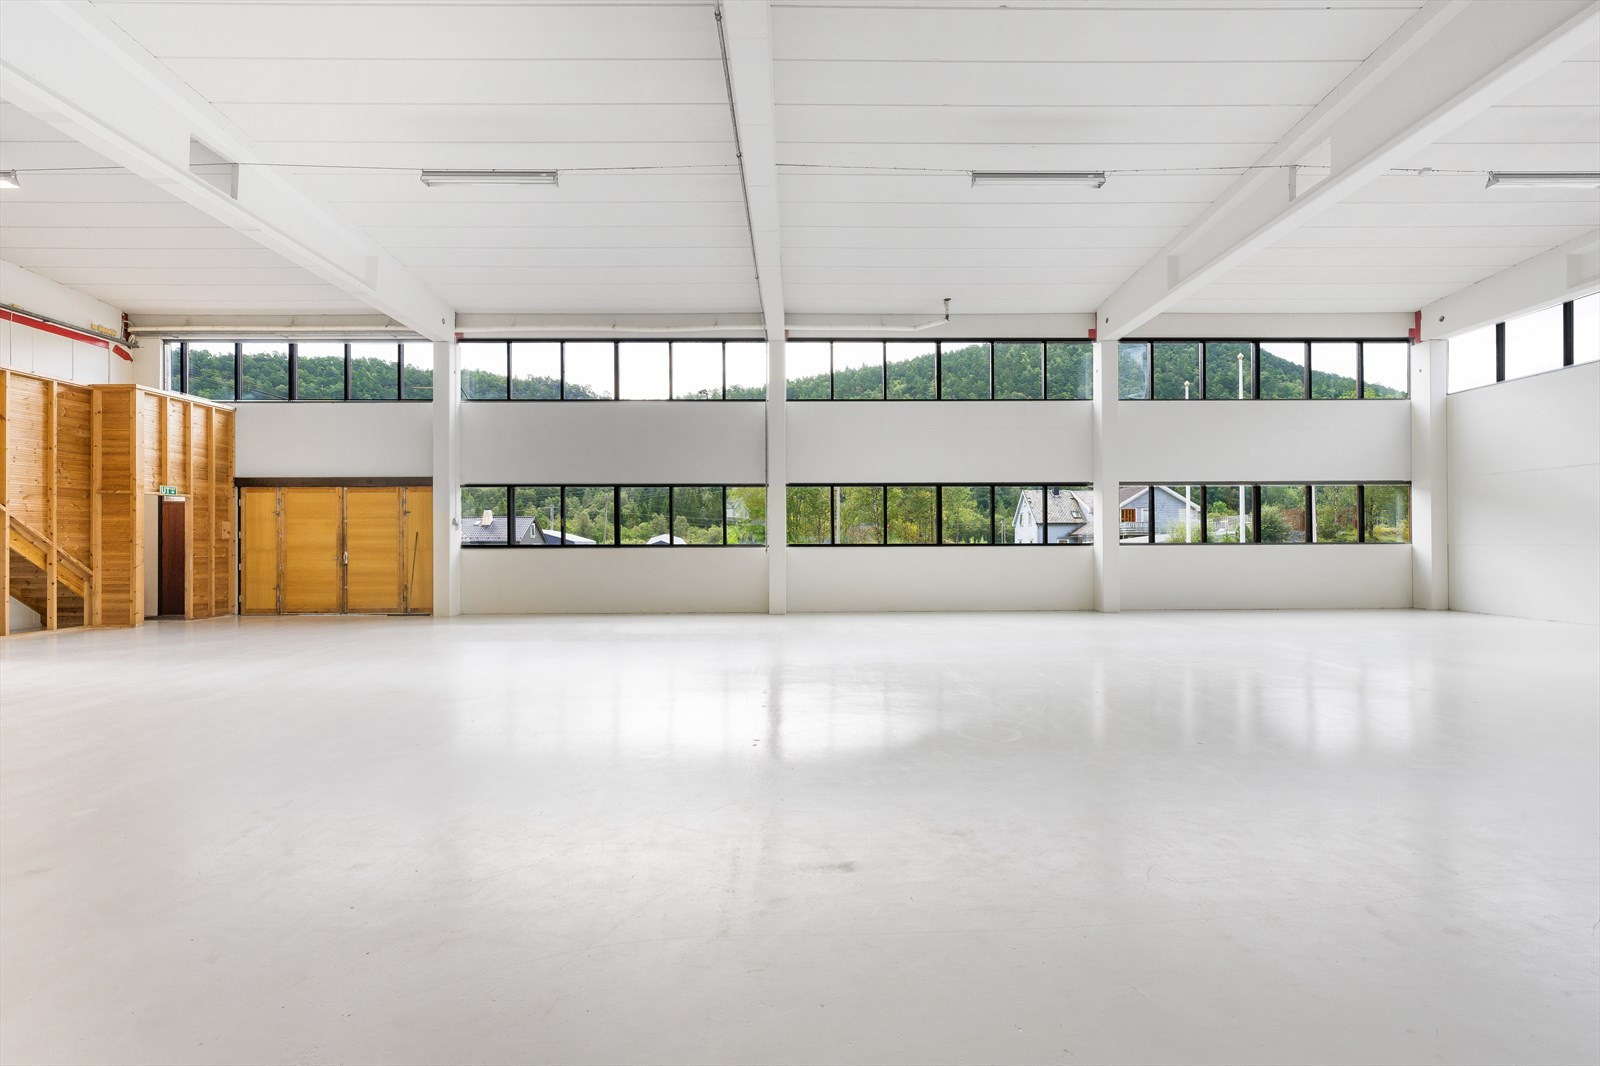 Hall 2: BTA 388 m² + mesanin på BTA 110 m² med 2 kontorer. 
Takhøyder: 4,9m under taksperrene. 5,5-6,2m til tak. 2,6/2,8m under mesaniner.